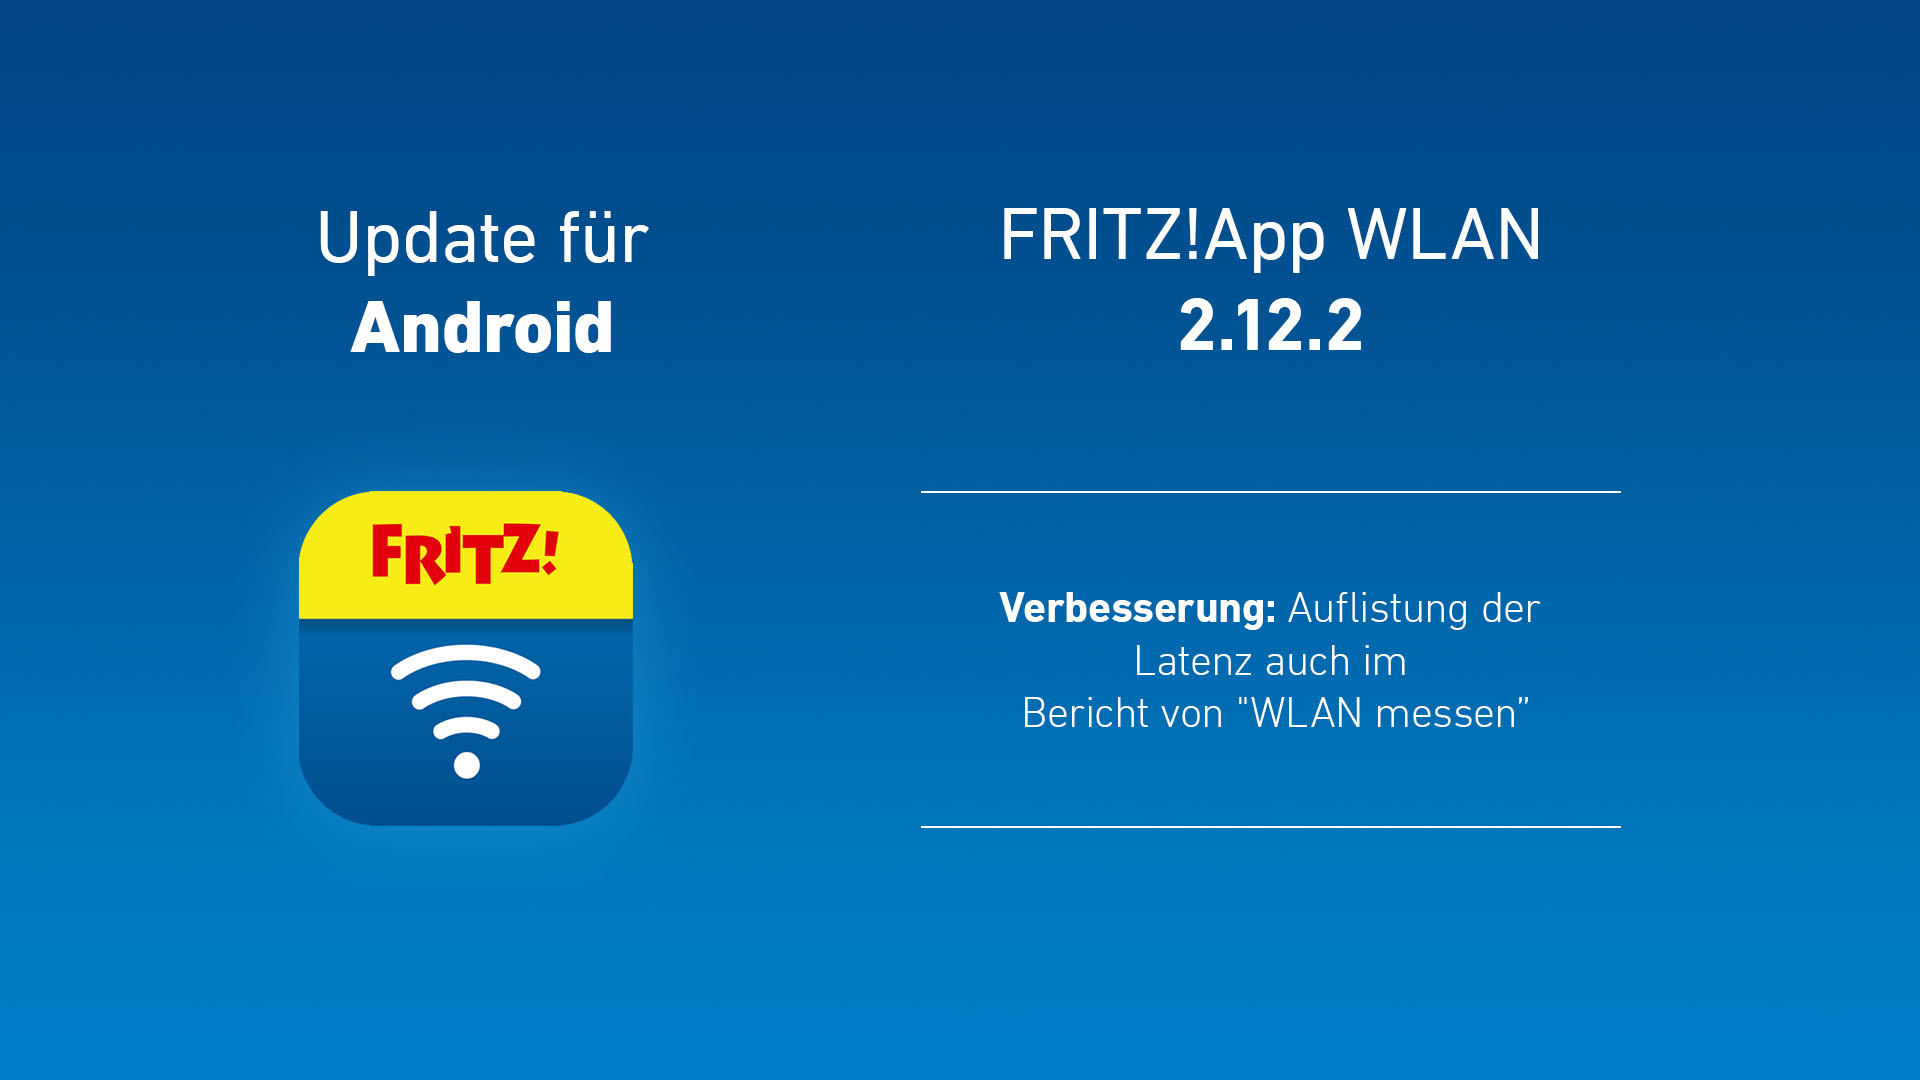 Fritzbox WLAN App: Neue Version 2.12.2 bei der Fritz!App WLAN mit Latenzmessung